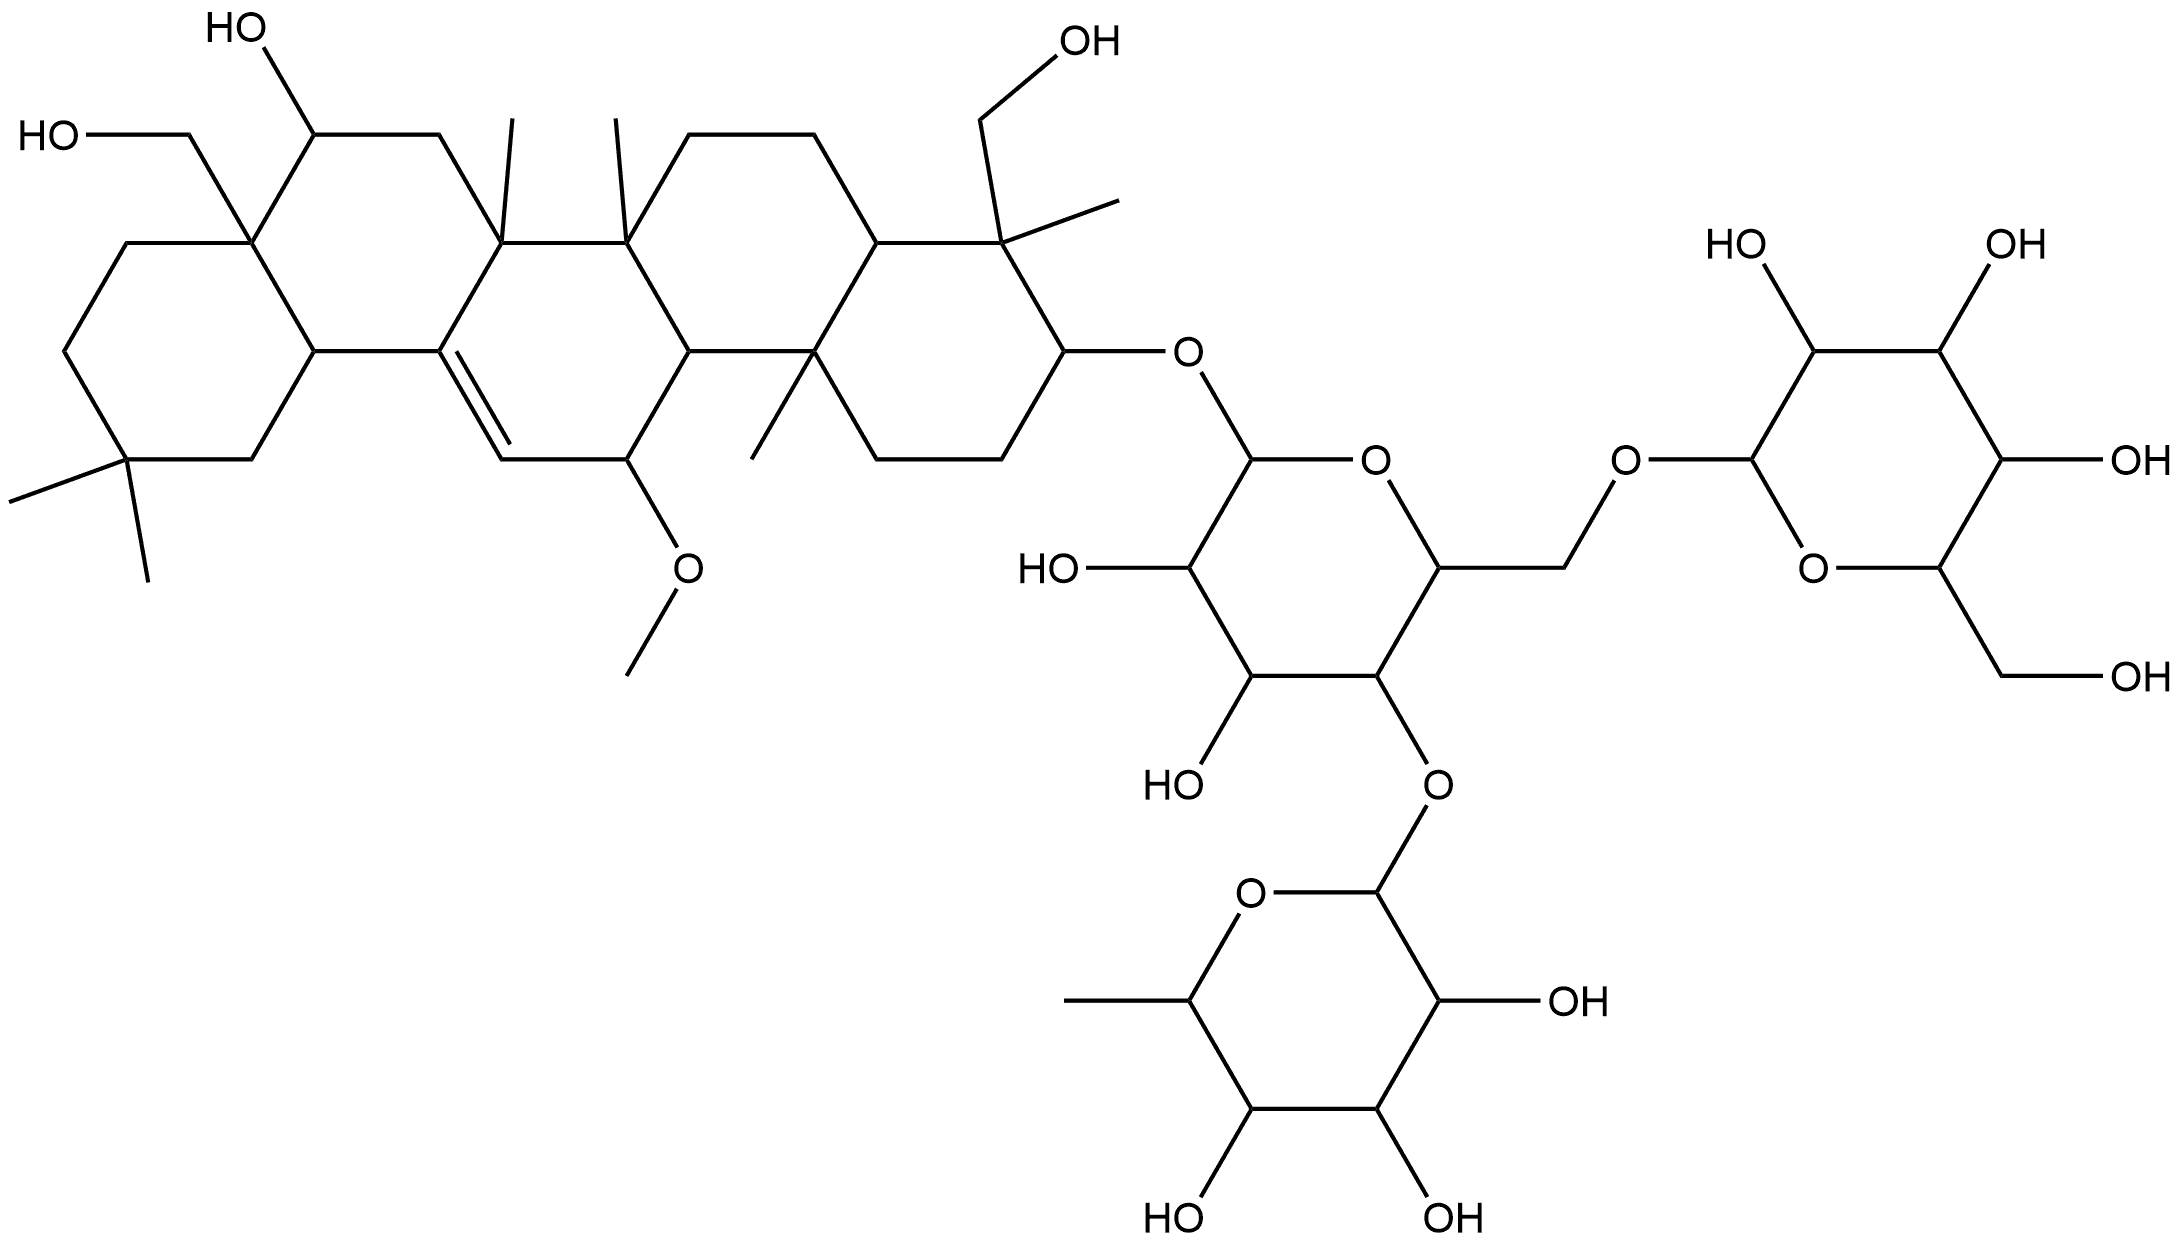 104109-35-5 β-D-Glucopyranoside, (3β,4α,11α,16β)-16,23,28-trihydroxy-11-methoxyolean-12-en-3-yl O-6-deoxy-α-L-mannopyranosyl-(1→4)-O-[β-D-glucopyranosyl-(1→6)]-